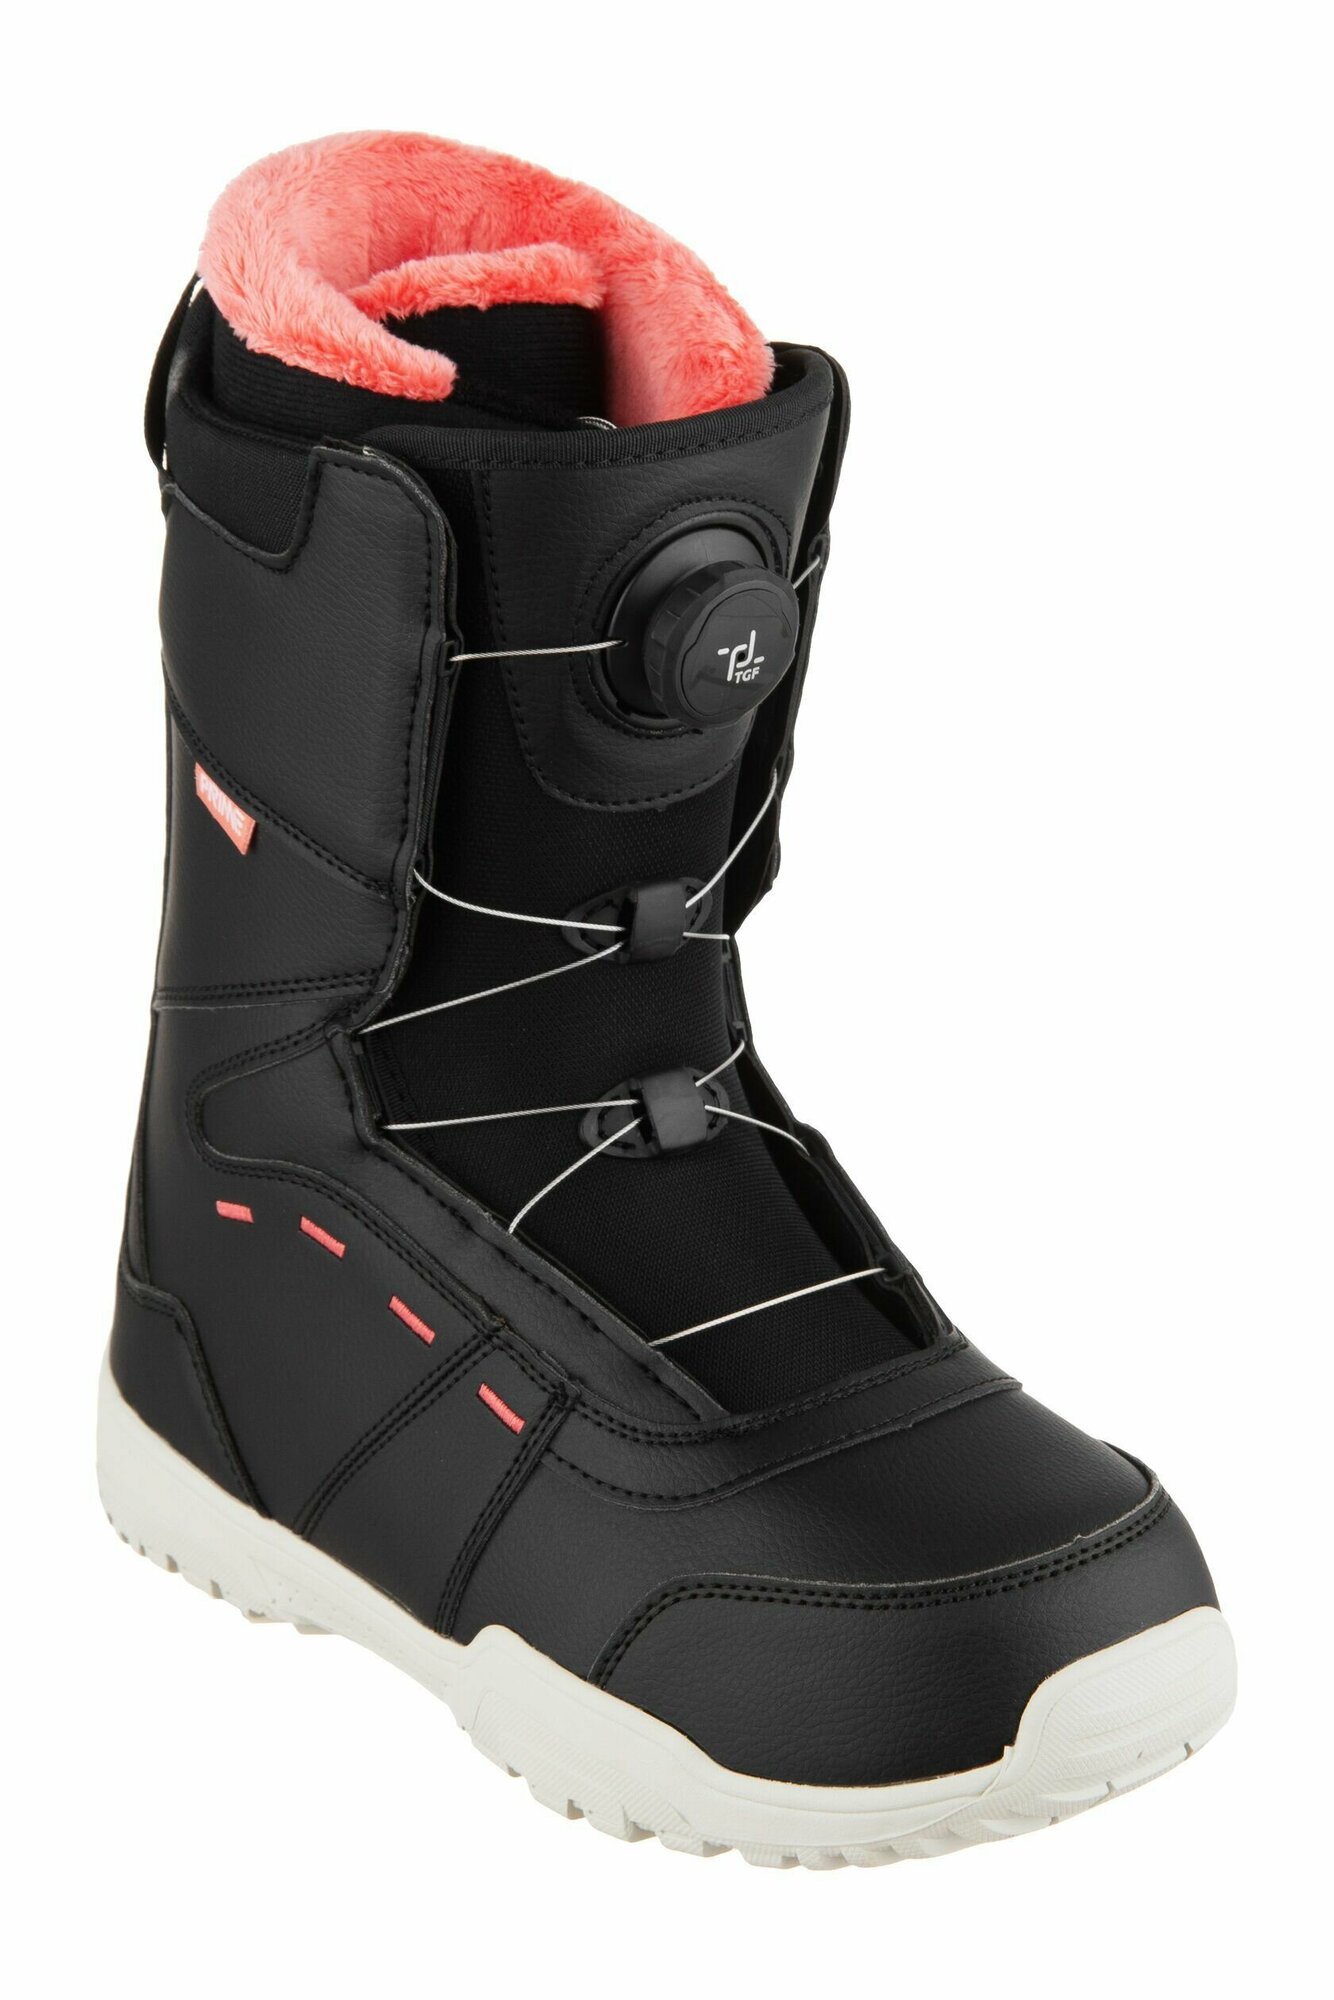 Ботинки сноубордические PRIME COOL-C1 TGF Black-Red (быстрая шнуровка) (36 RU / 23,5 cm)